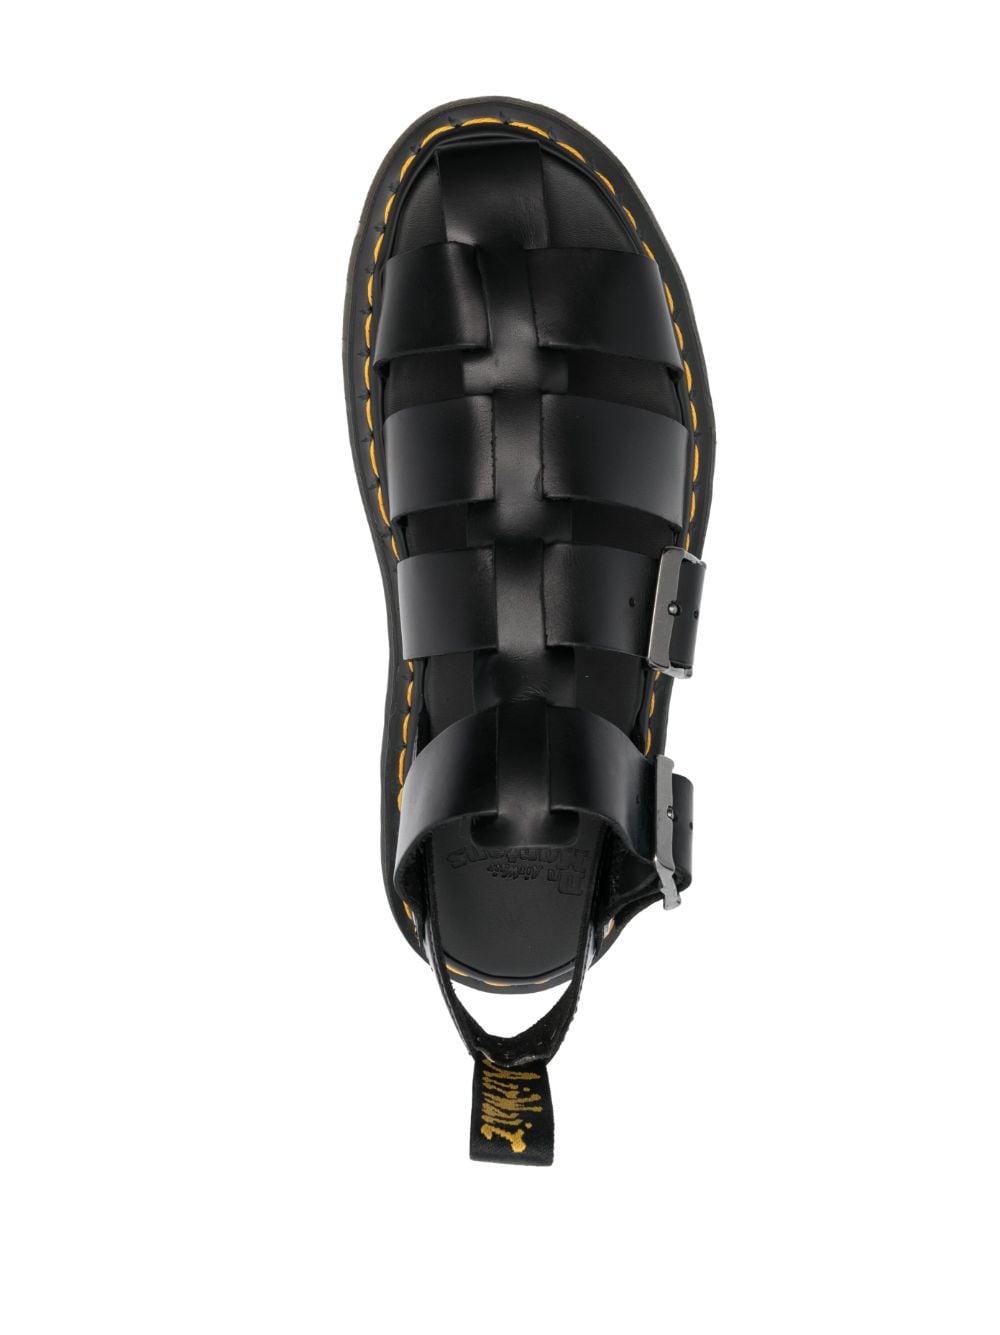 Caged-design leather sandals<BR/><BR/>